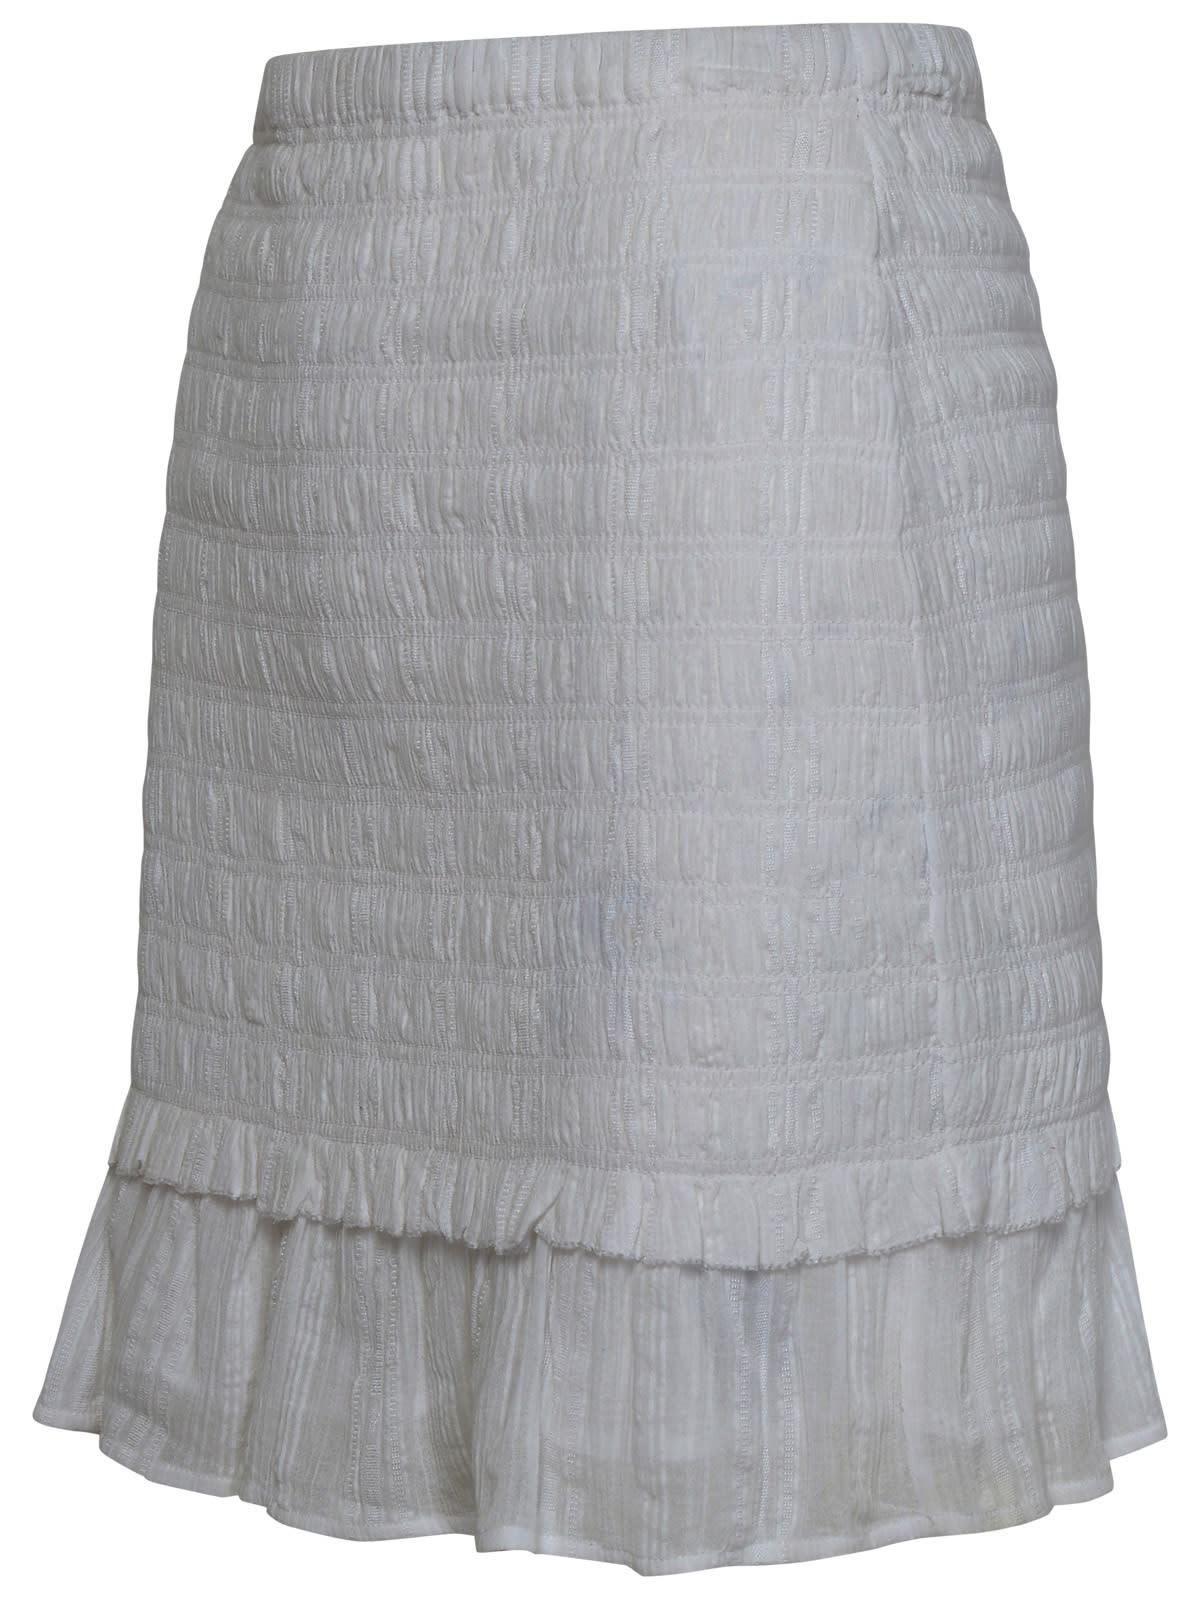 Shop Marant Etoile Dorela White Cotton Miniskirt